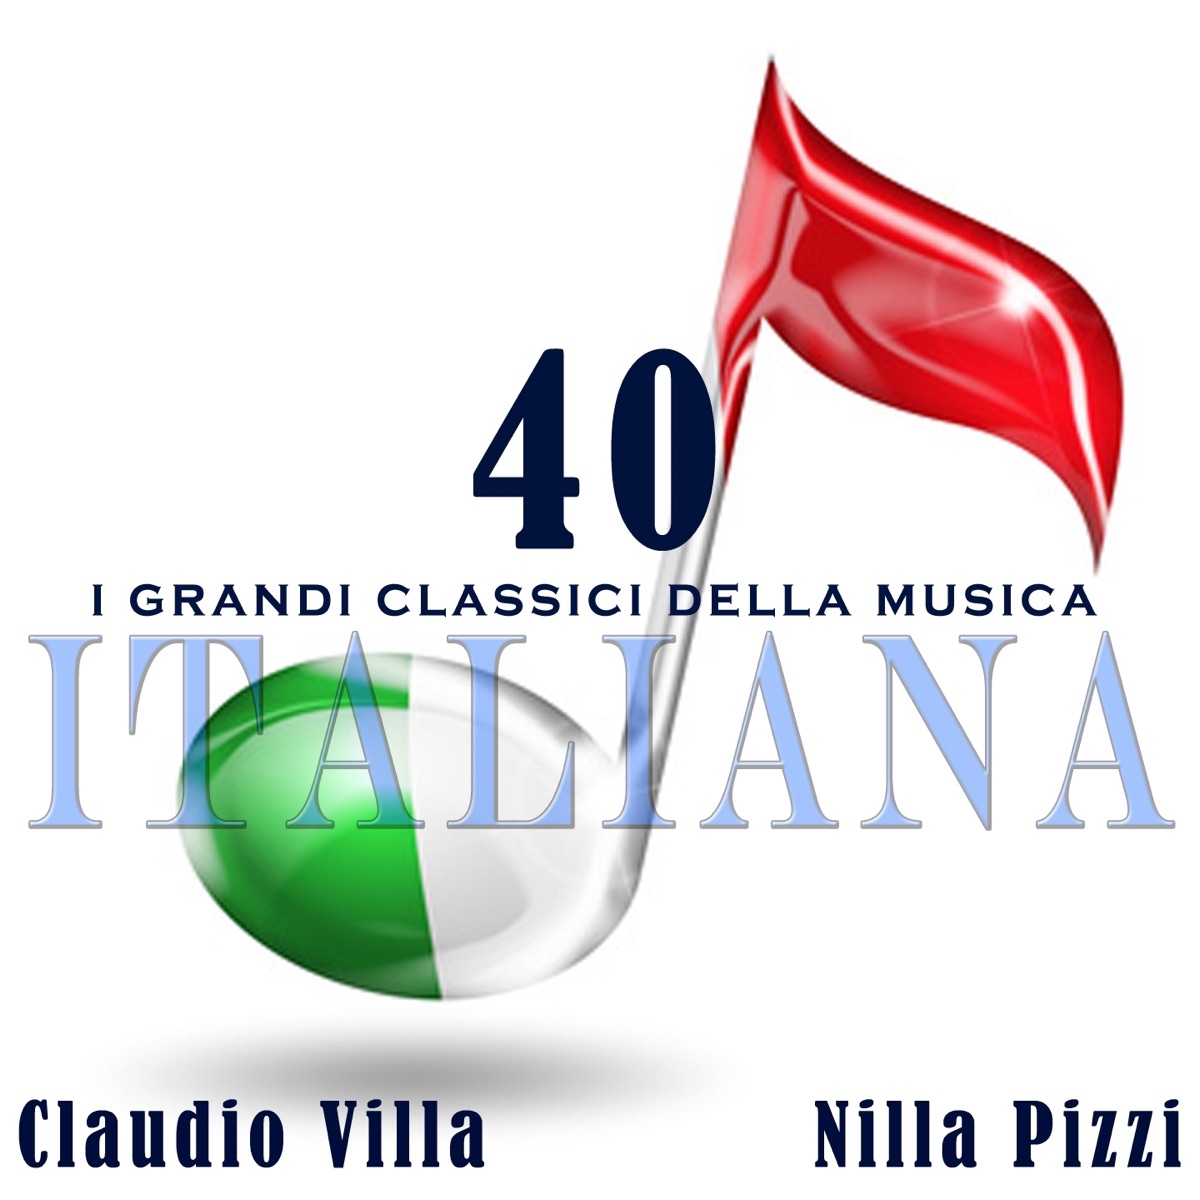 I grandi classici della musica italiana (Il Reuccio e la Regina della Musica  Italiana) - Album di Claudio Villa & Nilla Pizzi - Apple Music